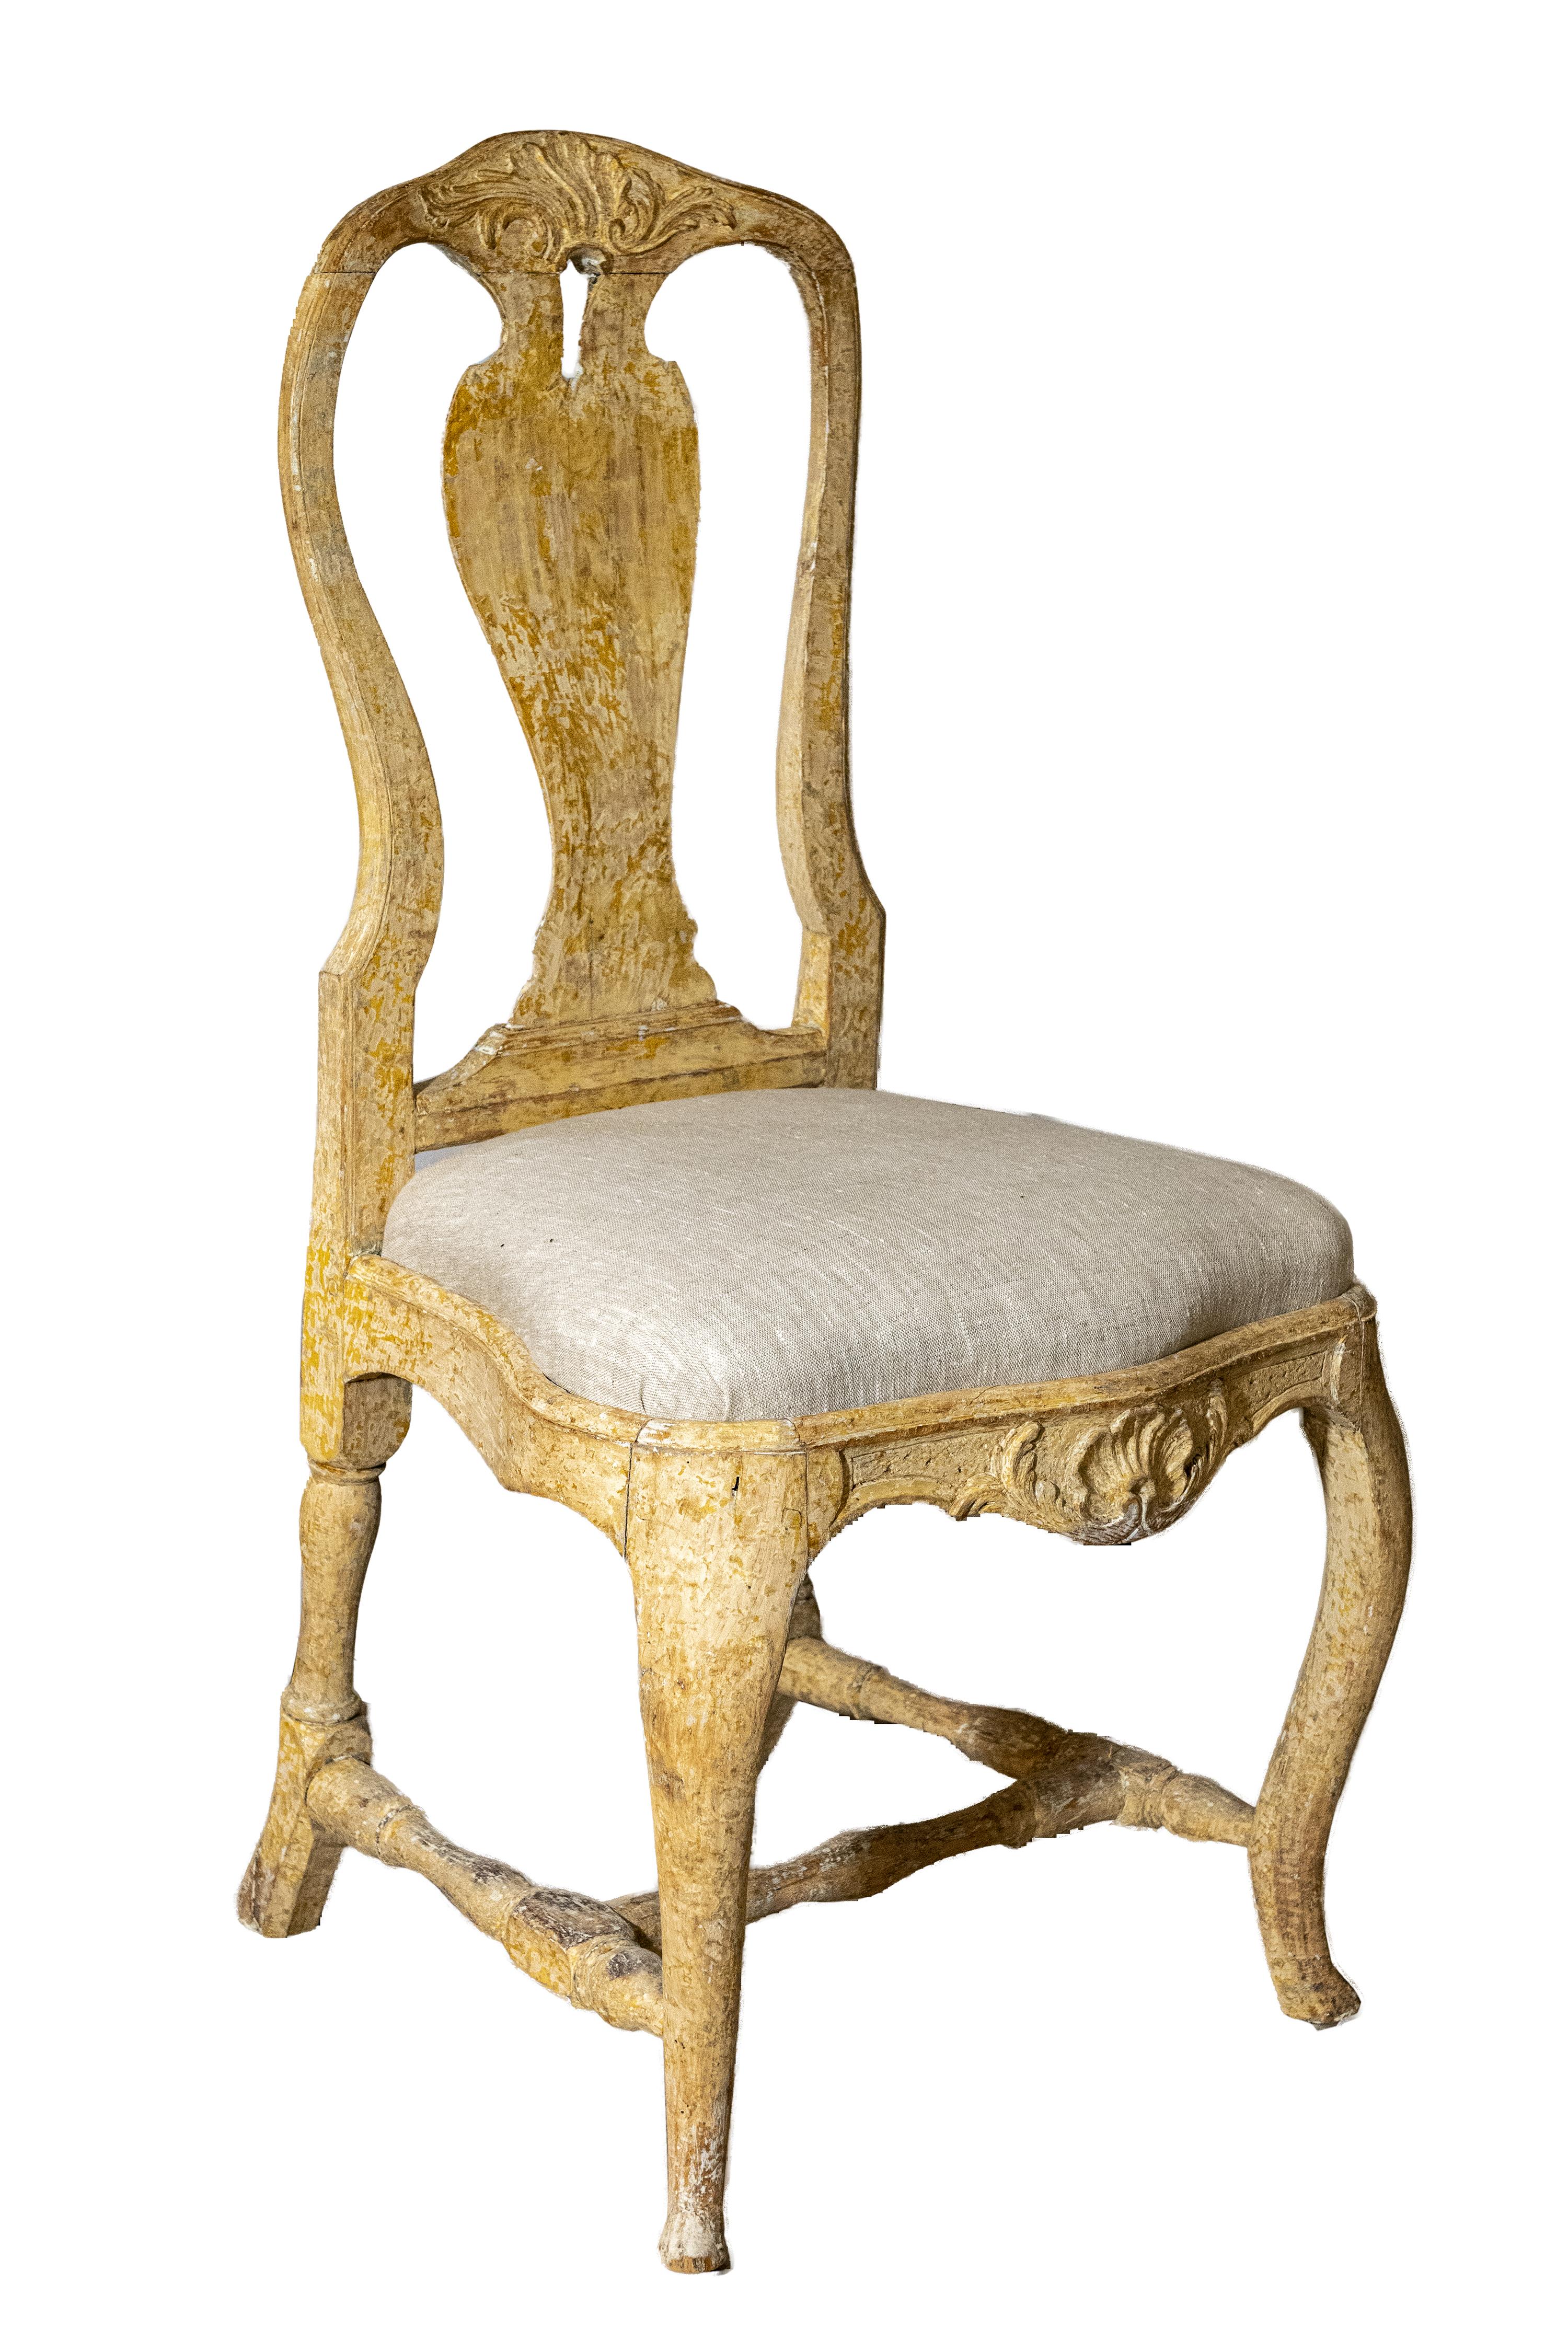 Une paire de chaises rococo fabriquées à Stockholm, dont la peinture d'origine a été grattée, avec des éclisses sculptées, des pieds cabriolets, des traverses en forme de H, et une nouvelle tapisserie en lin.  Créée au XVIIIe siècle, cette paire de